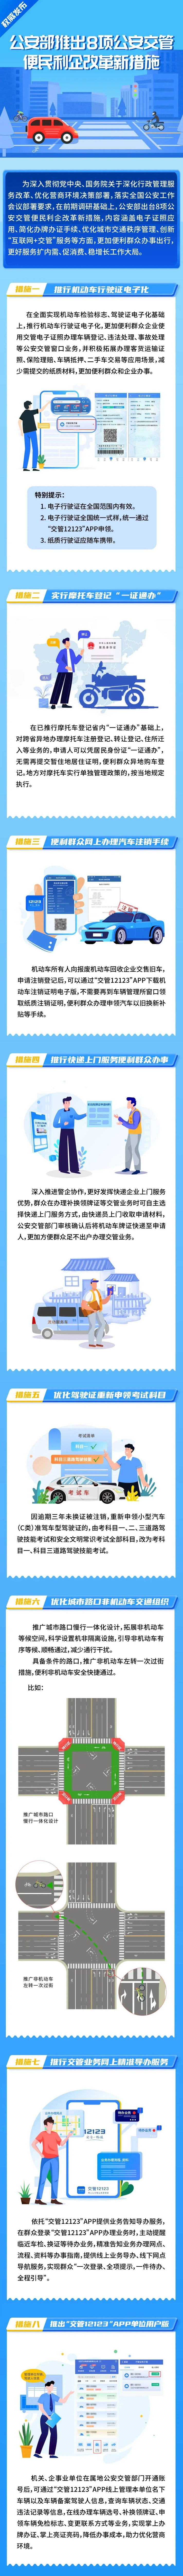 【交通】公安部推出试点机动车行驶证电子化等8项新措施，7月1日起实施